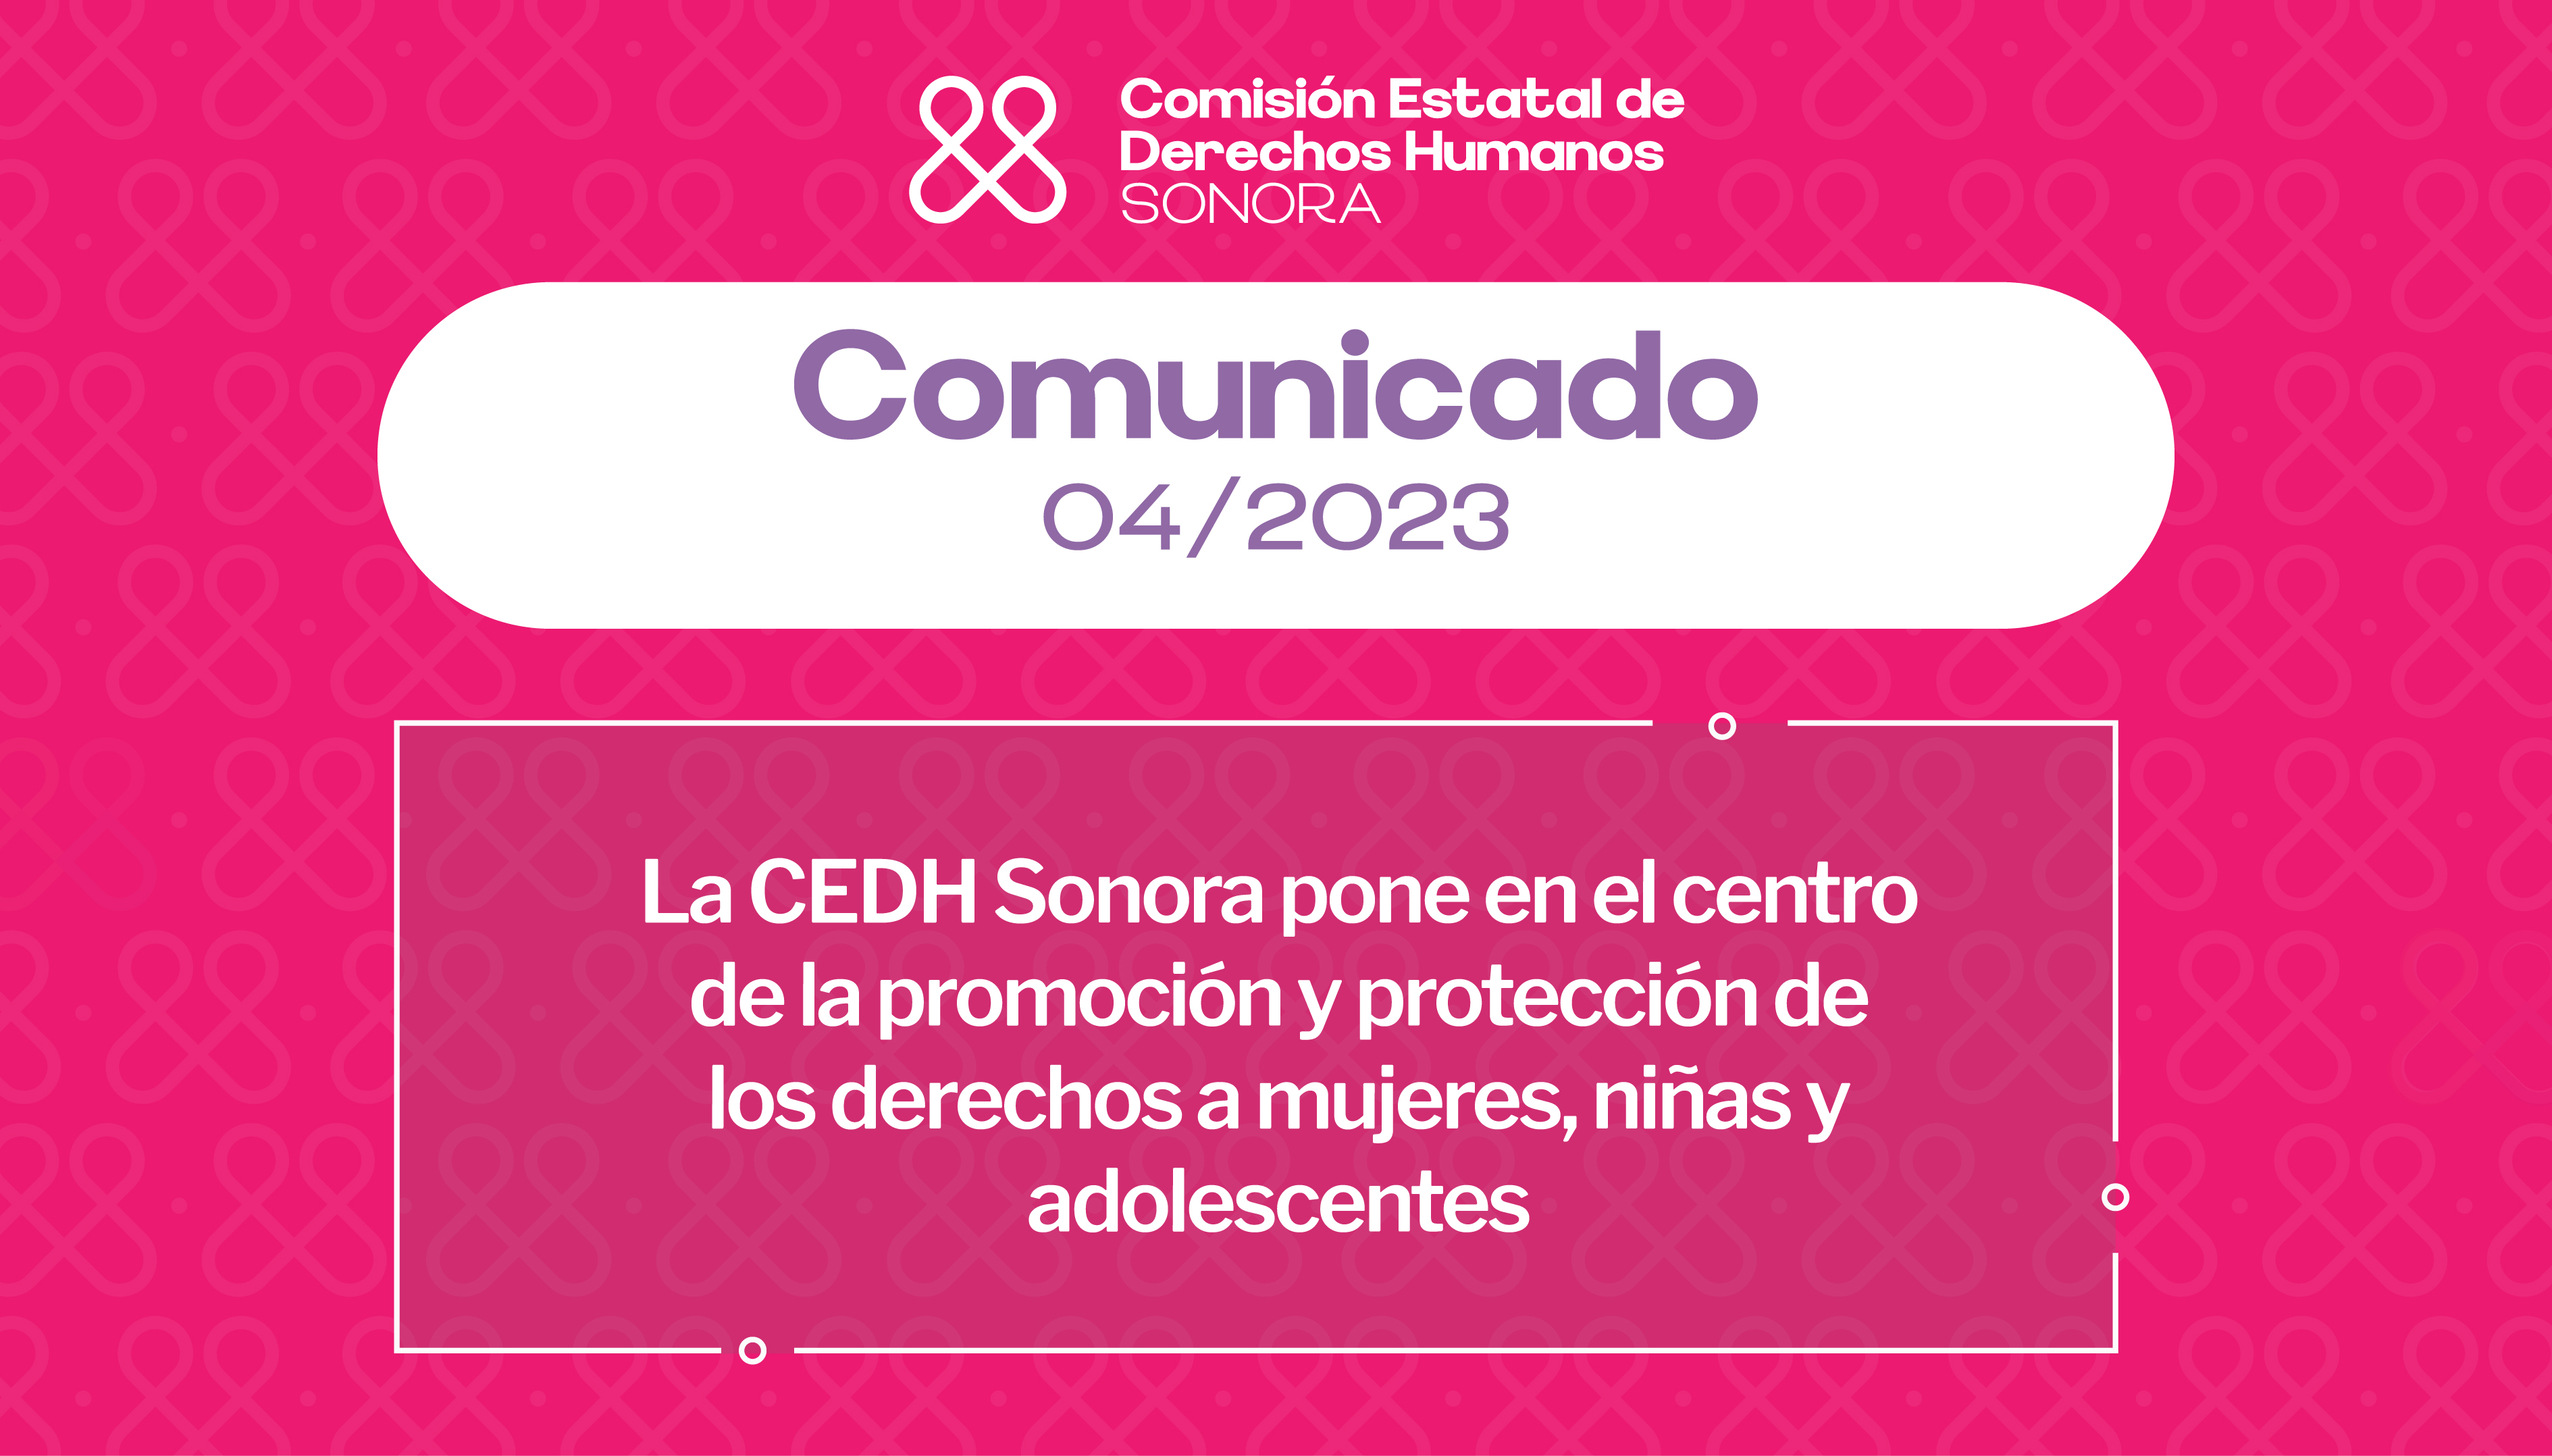 La CEDH Sonora pone en el centro de la promoción y protección de los derechos a mujeres, niñas y adolescentes